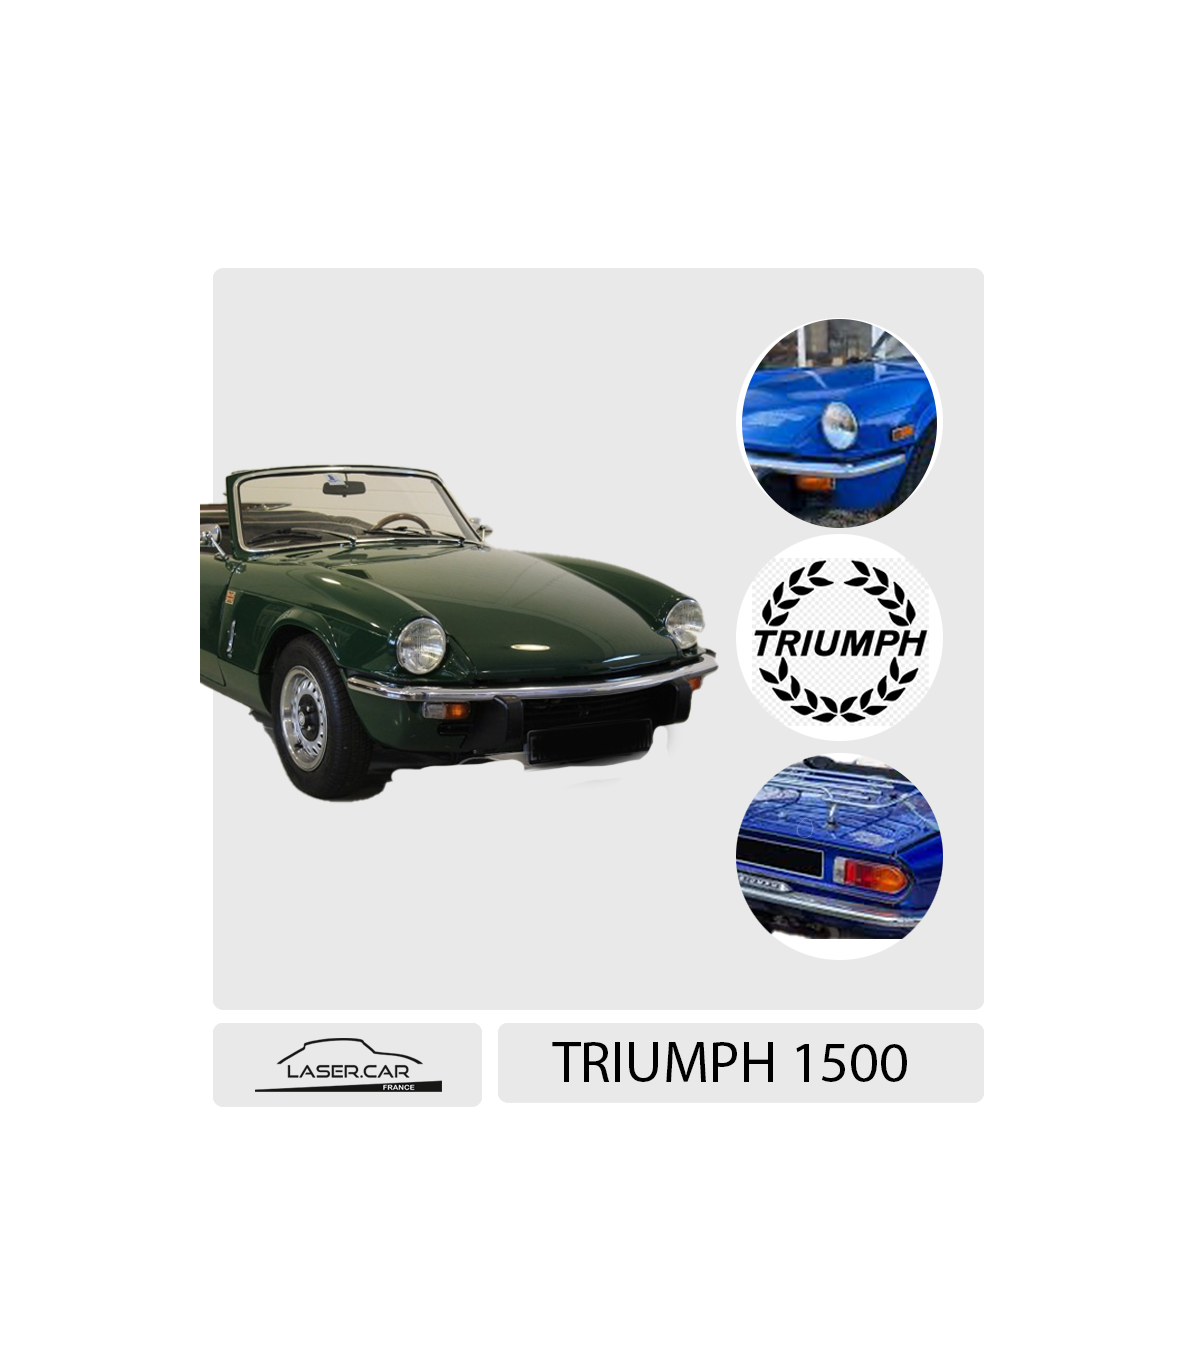 Feu clignotant/veilleuse, MG, Triumph